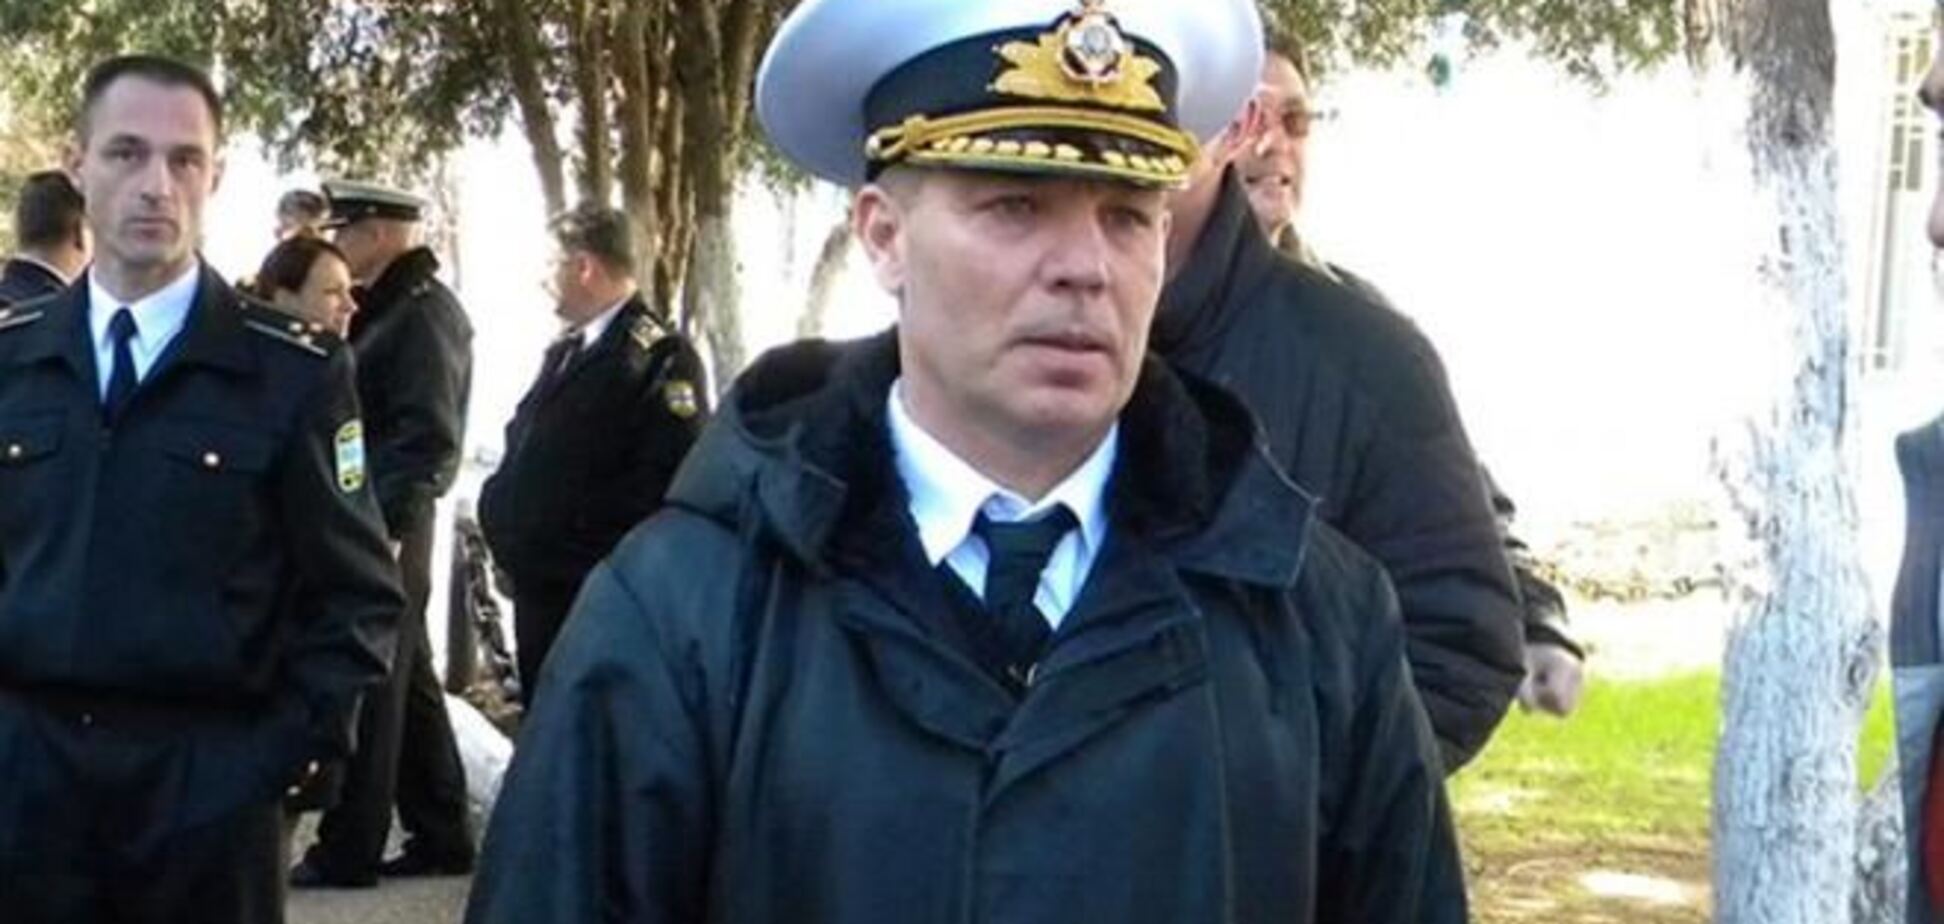 Украинские войска не выводятся из Крыма - командующий ВМС Украины